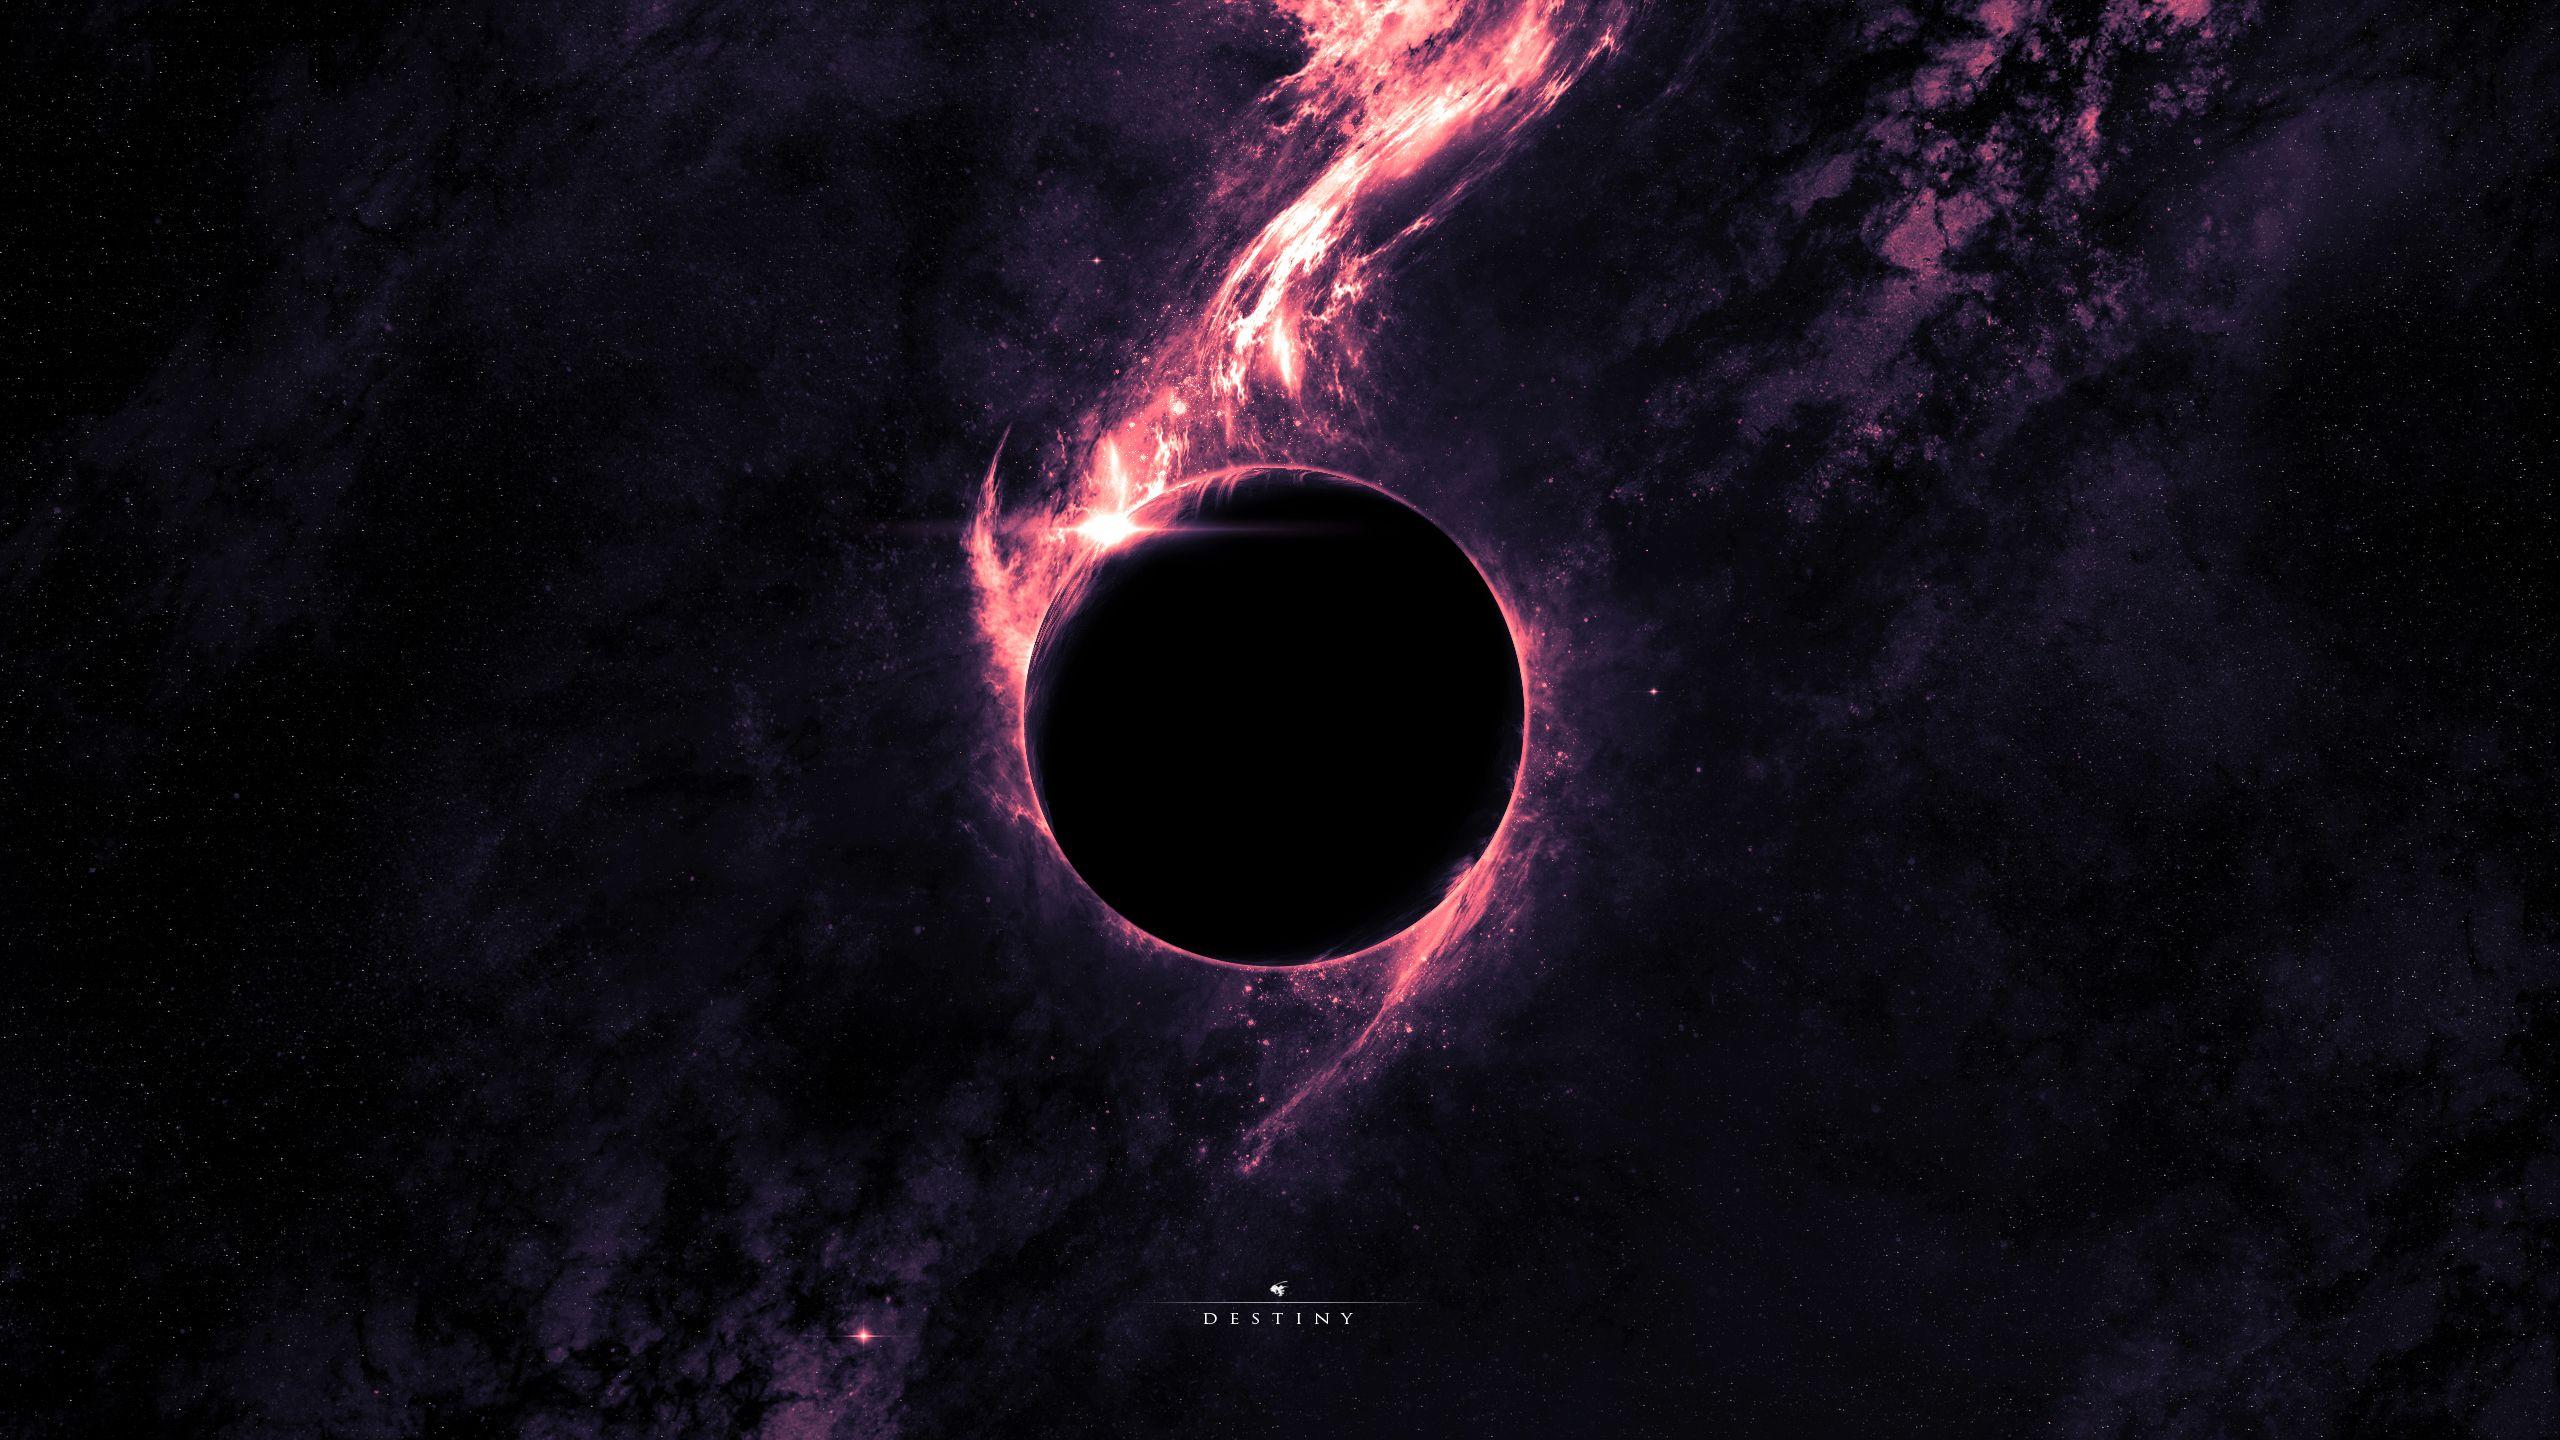 Bức hình nền quasar với hình ảnh hố đen sẽ đem đến cho bạn một cảm giác thật đặc biệt khi tận hưởng không gian bên máy tính của bạn. Chất lượng cao và tuyệt đẹp, bức ảnh này đem đến sự trải nghiệm hình ảnh sống động nhất về không gian. Tải ngay miễn phí và trải nghiệm.